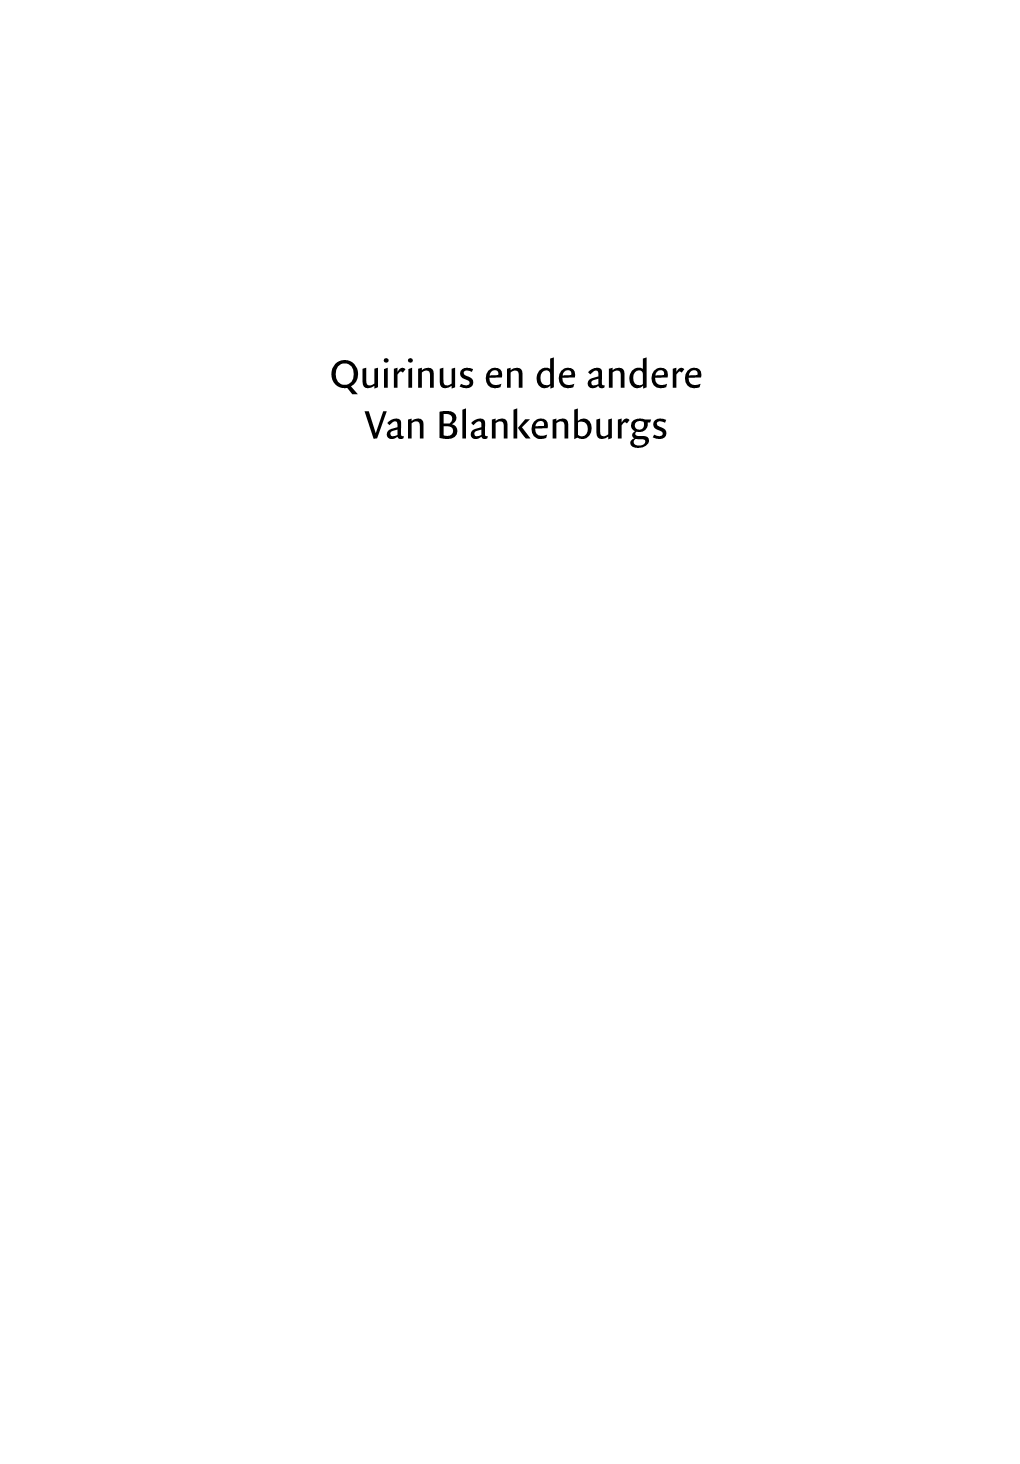 Quirinus En De Andere Van Blankenburgs THEOLOGISCHE UNIVERSITEIT VAN DE GEREFORMEERDE KERKEN in NEDERLAND TE KAMPEN